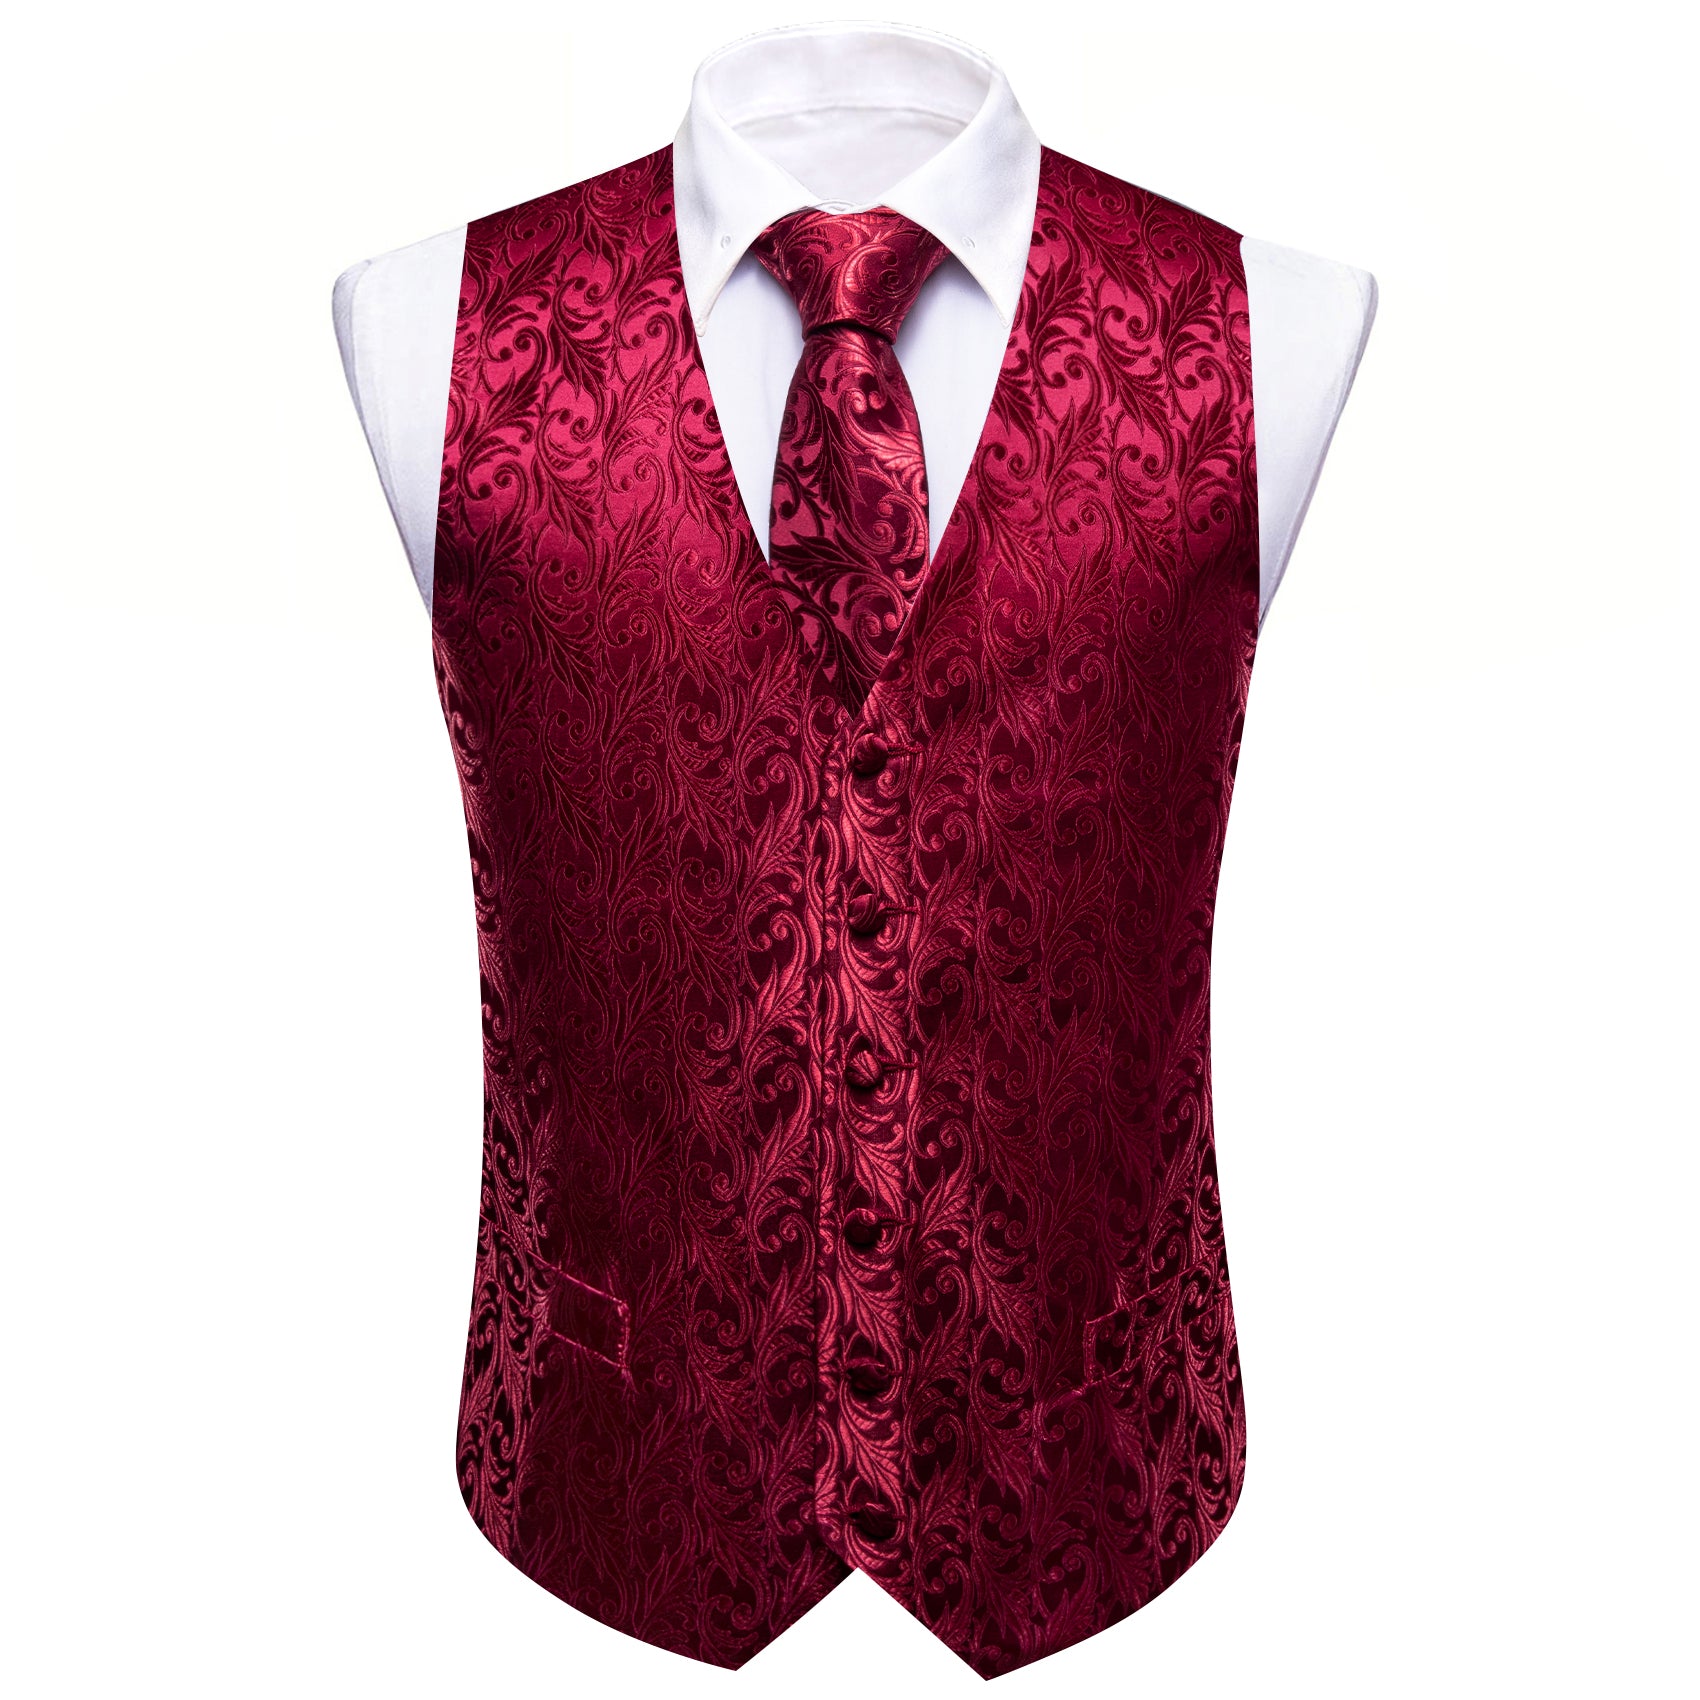 Dark Red Floral Silk Vest Tie Pocket square Cufflinks Set